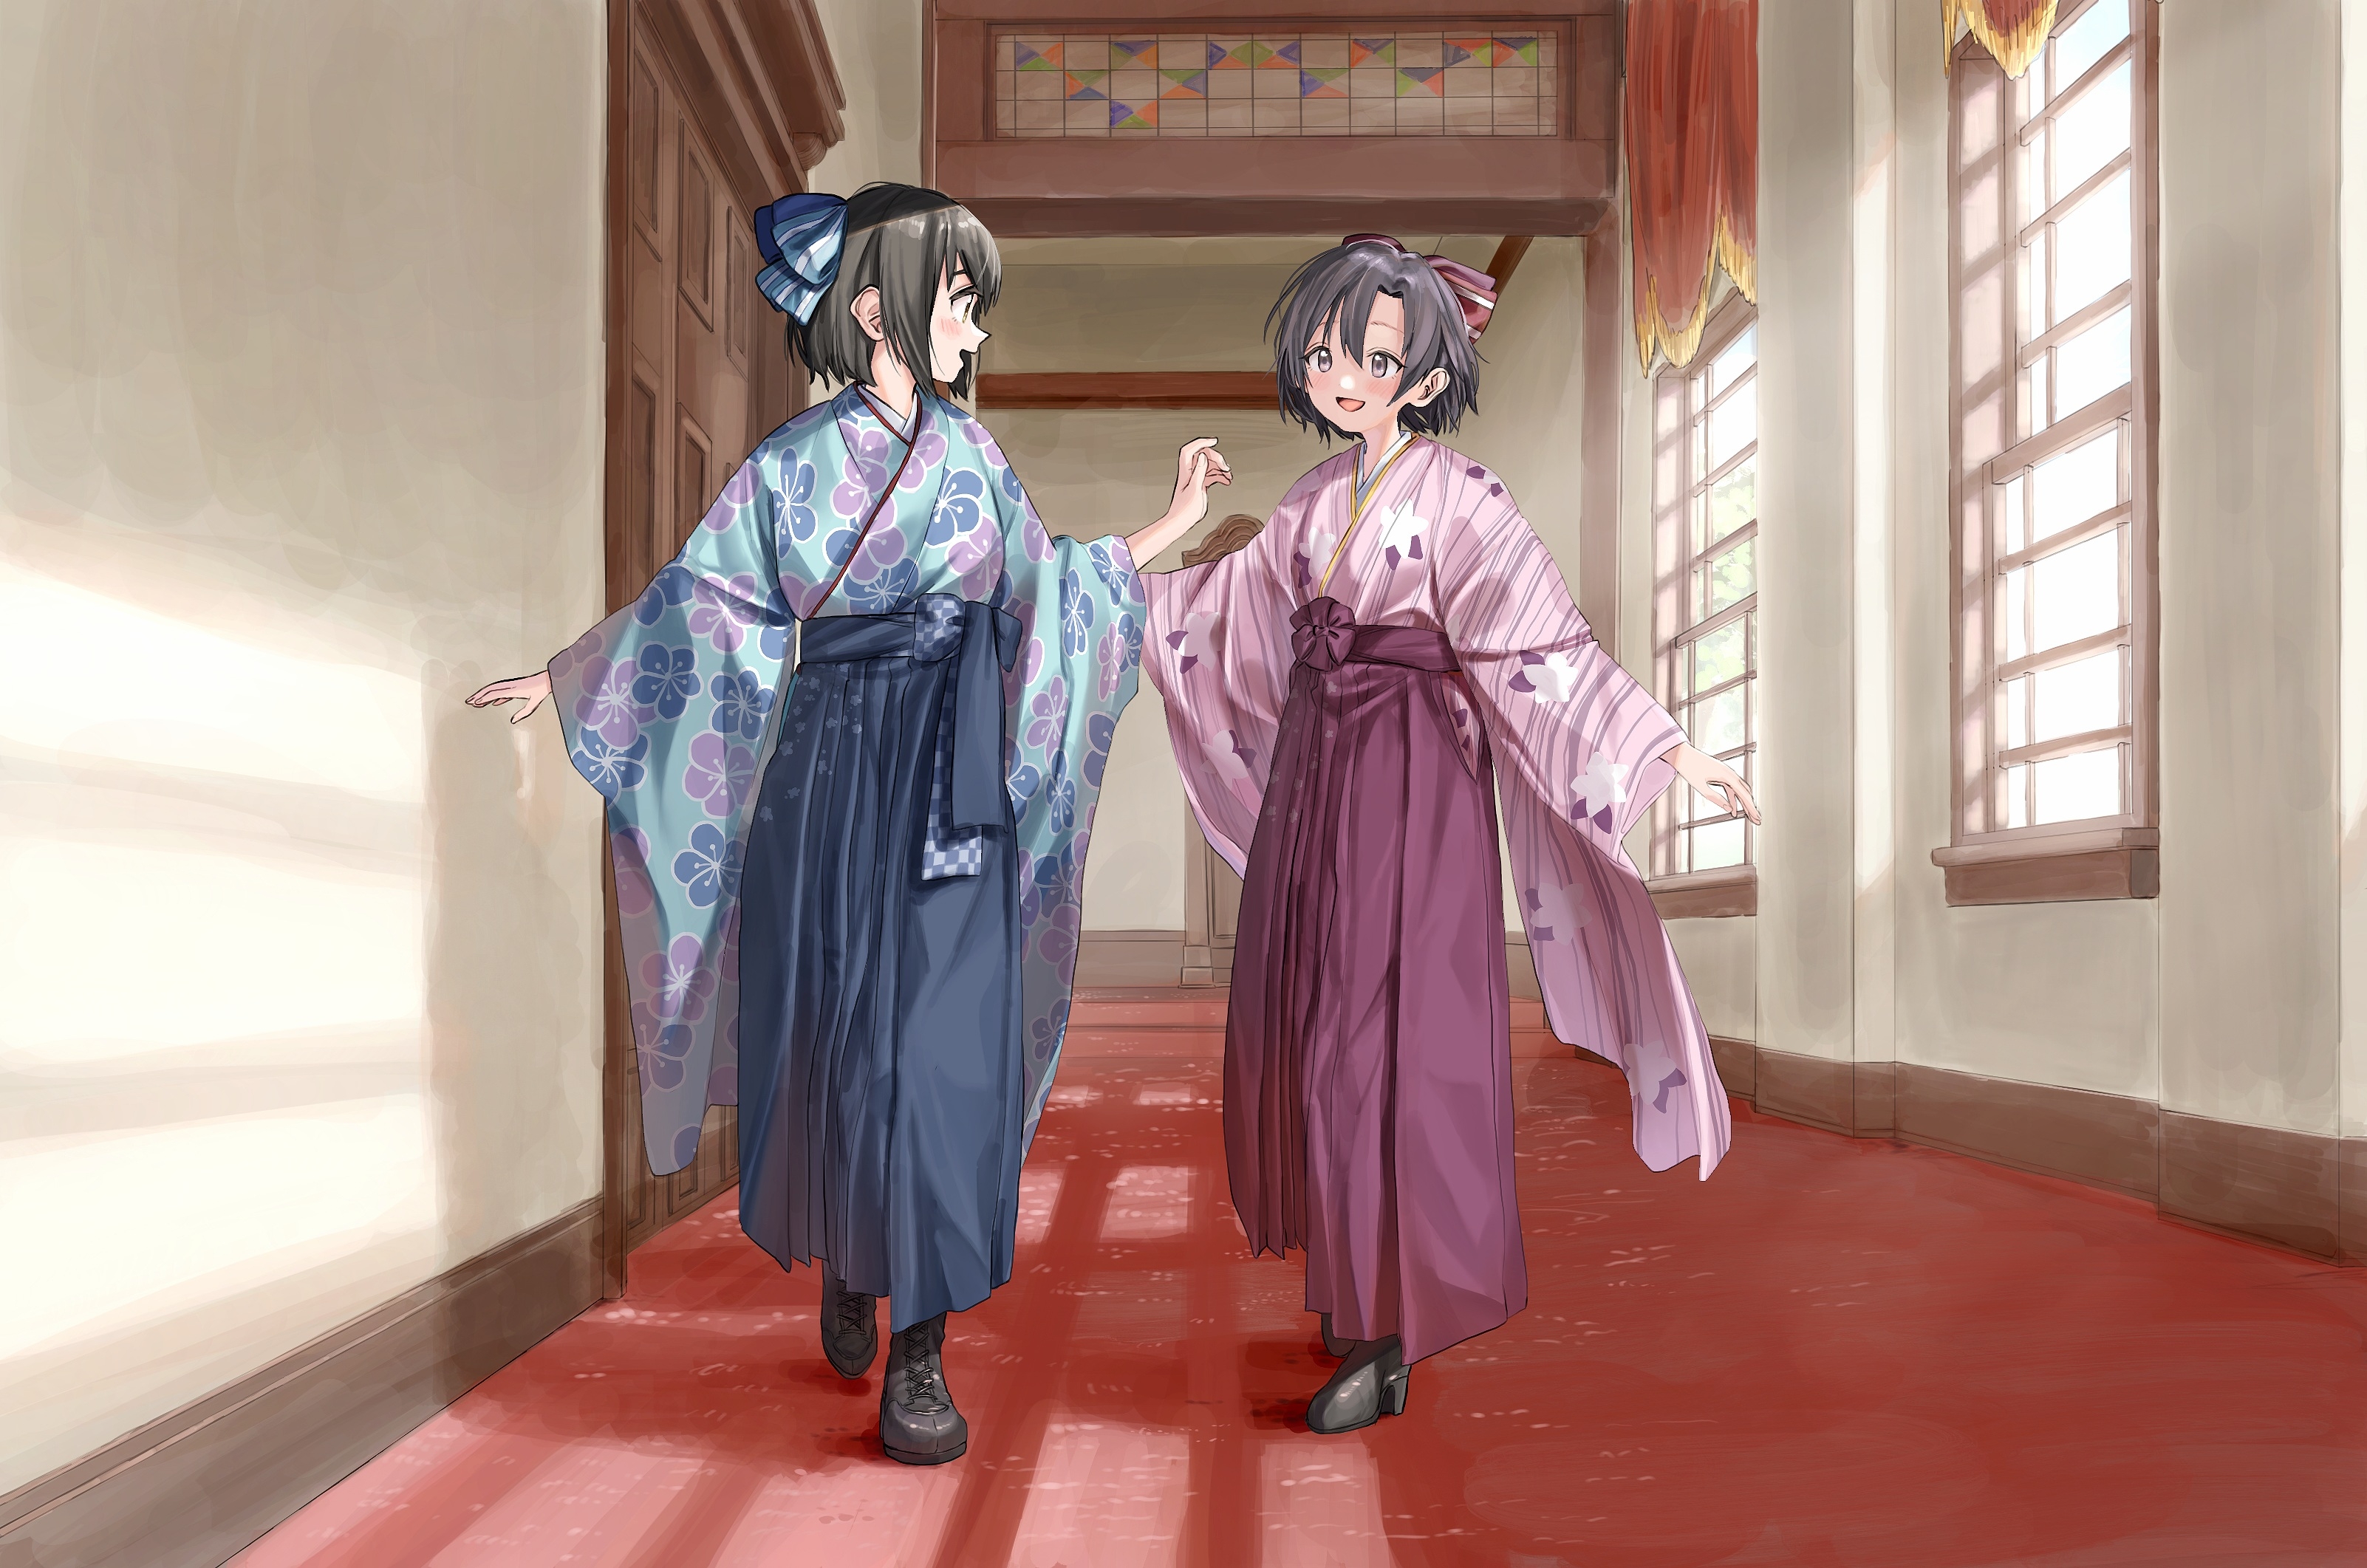 Фото девочки-золушки-идолмейстеры. кимоно Wallpaper Shiragiku Hotaru - бесплатные картинки на Fonwall